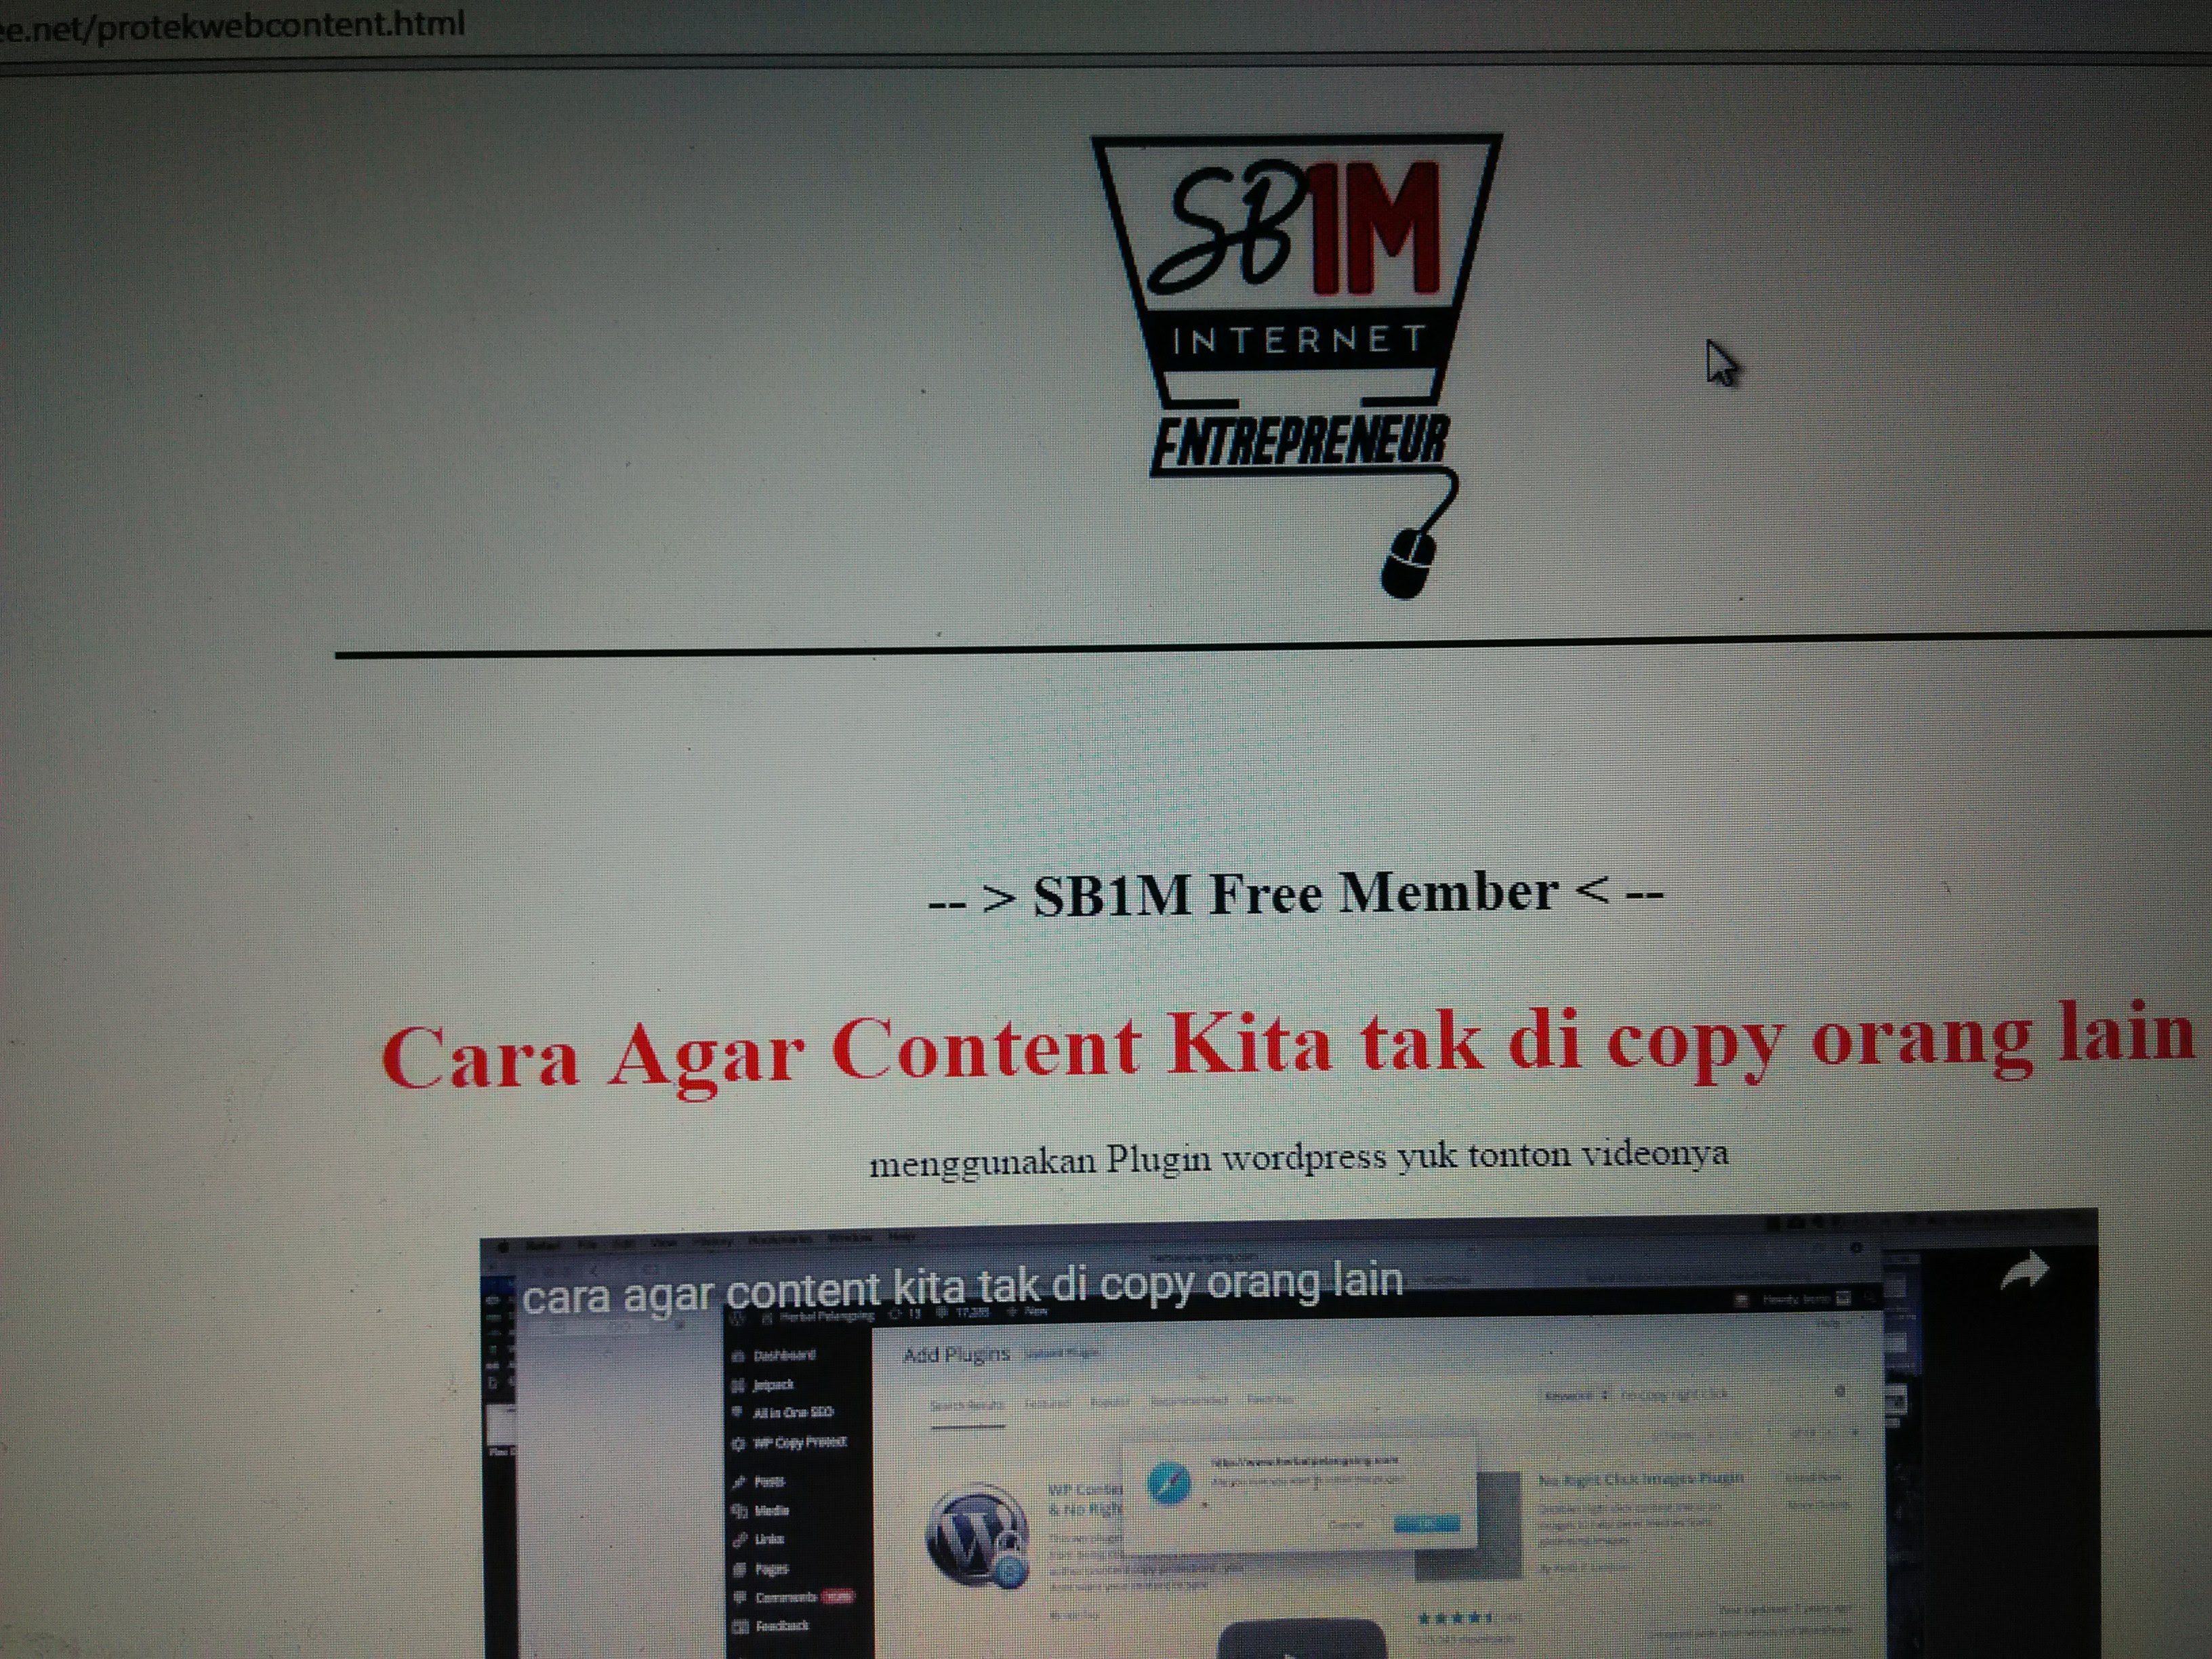 Materi Pelatihan Bisnis Internet SB1M Cara Agar Konten Tidak Bisa Di-Copy